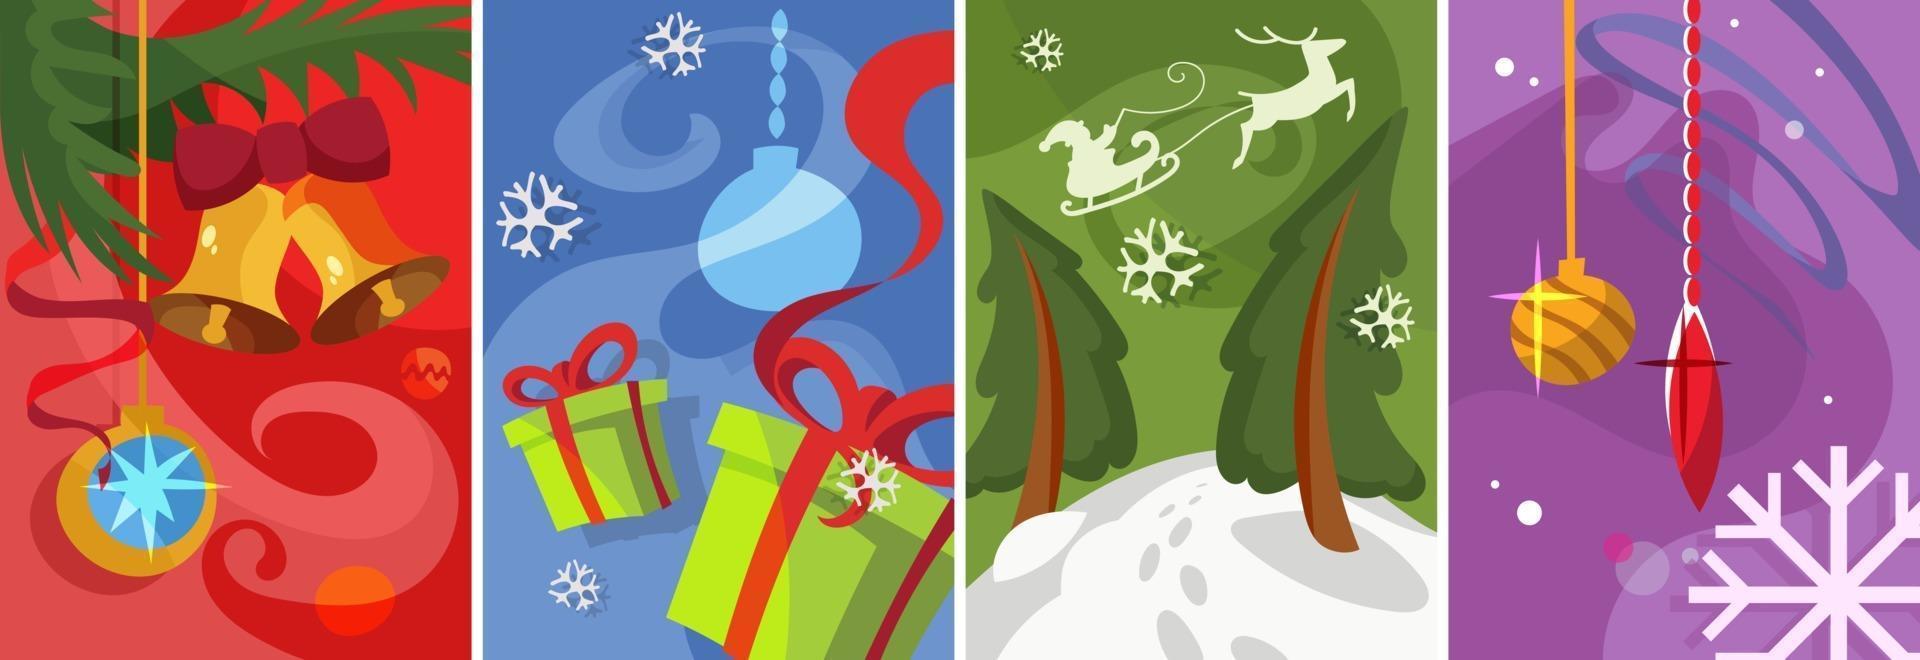 colección de carteles navideños. diseños de postales en estilo de dibujos animados. vector